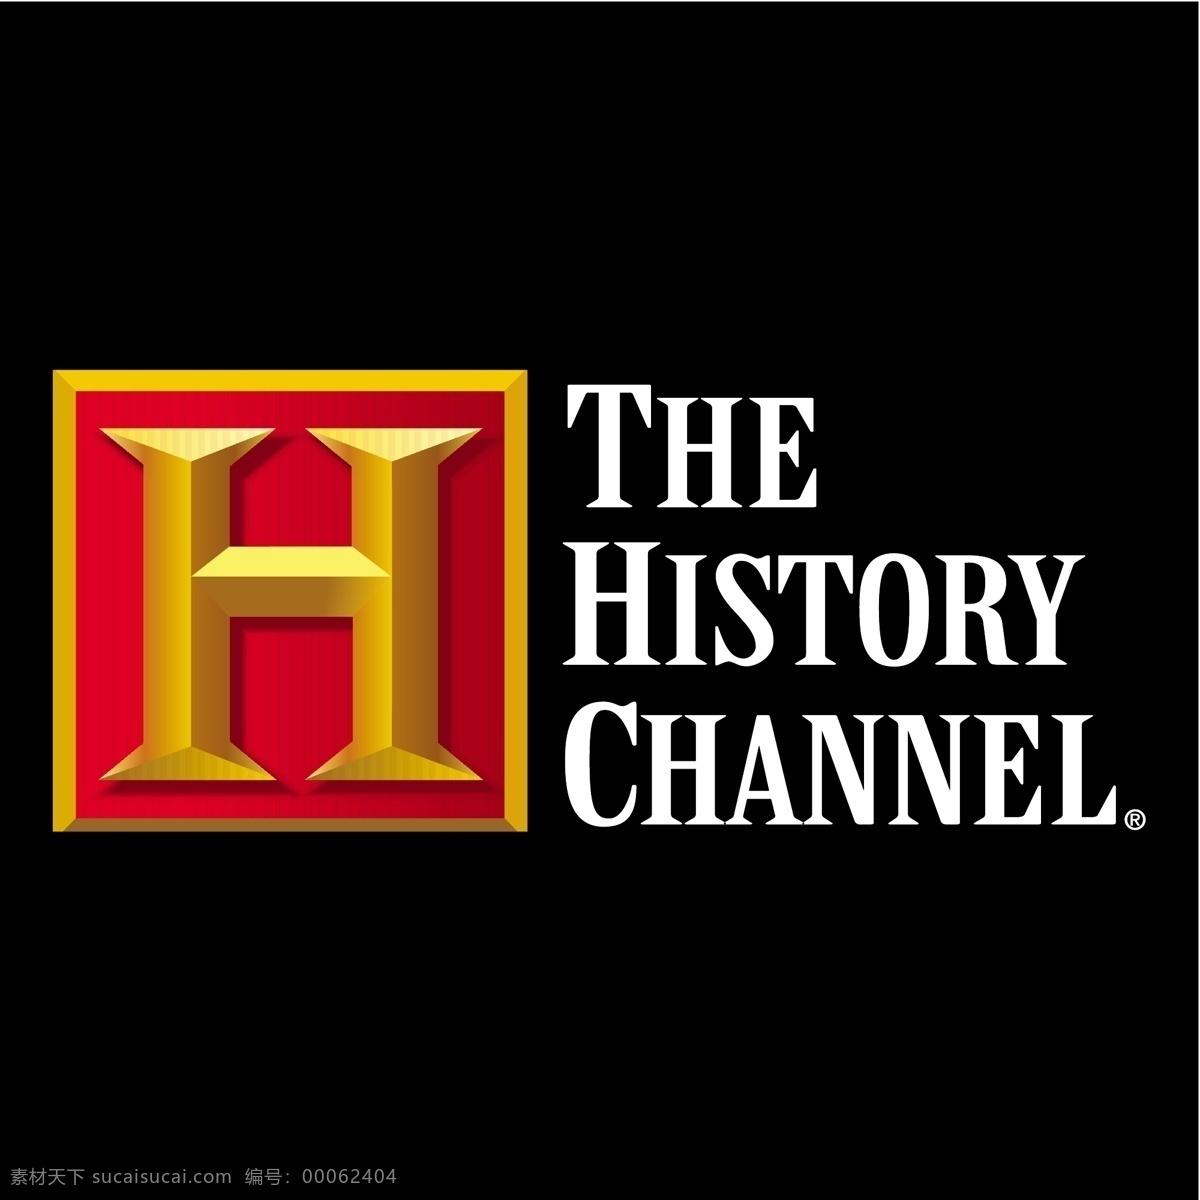 历史频道 自由 标识 psd源文件 logo设计